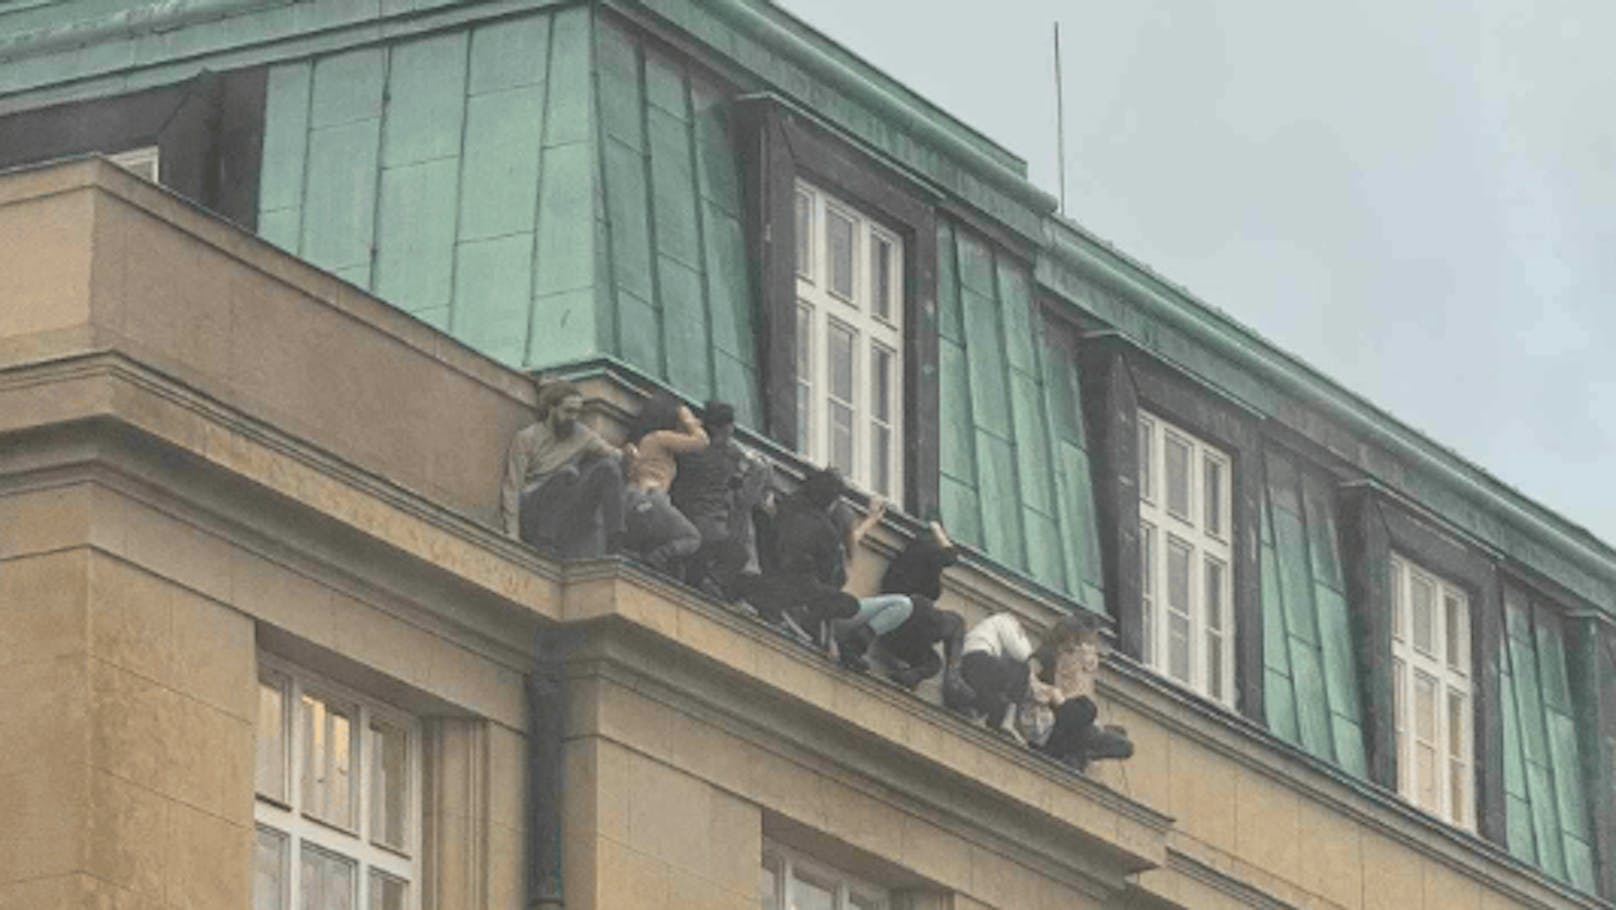 Studentinnen und Studenten flohen in Panik auf die Fassade des Gebäudes.